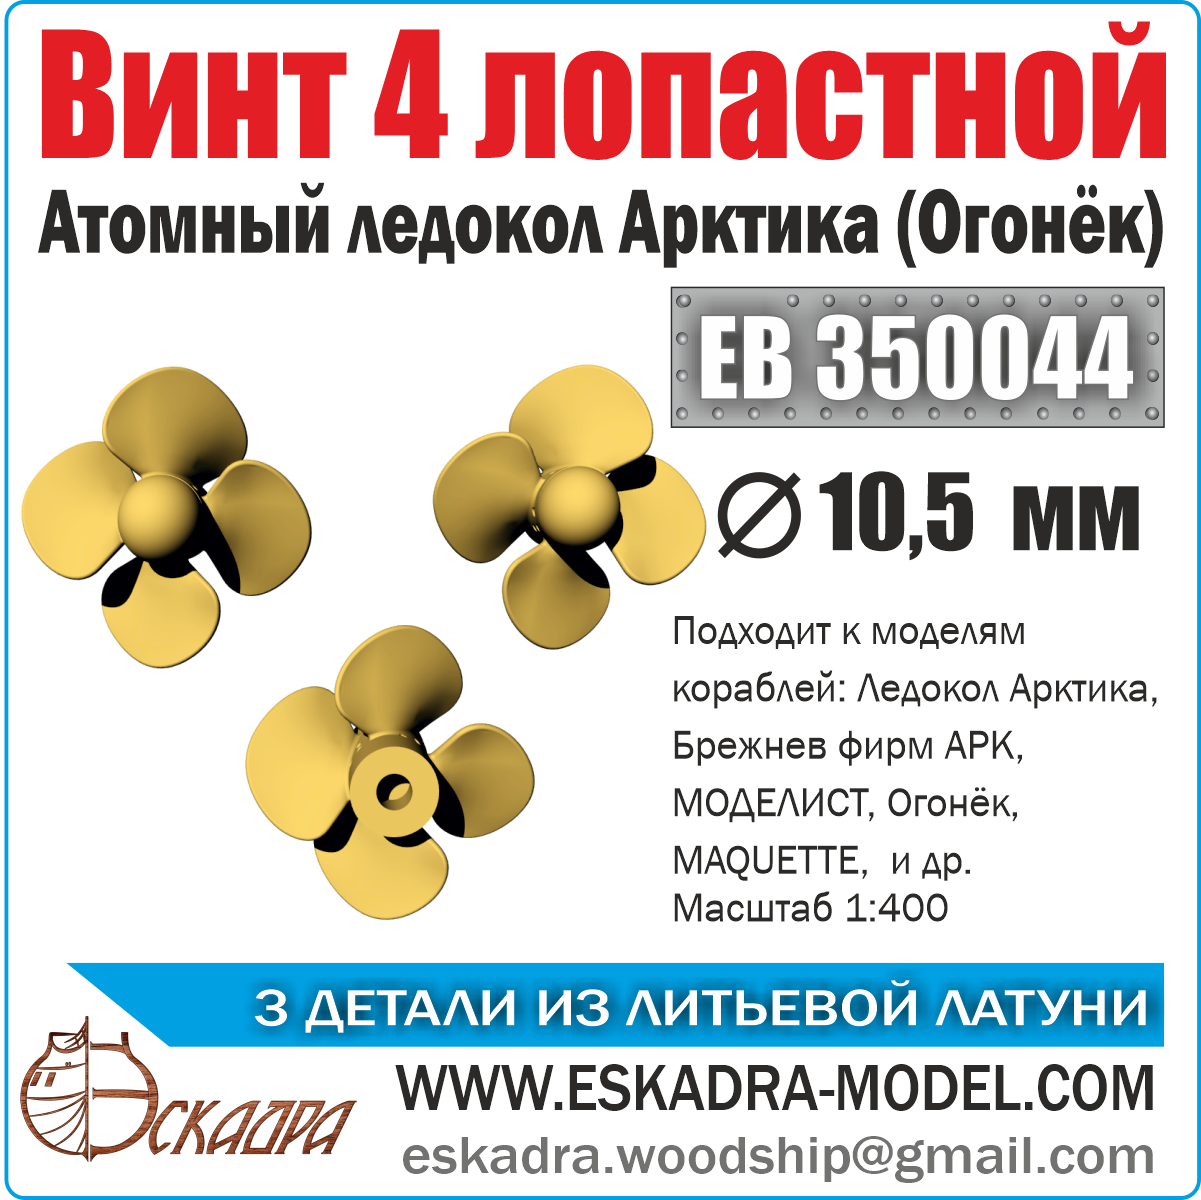 ЕВ350044  дополнения из металла  Винт 4х лопастной 10,5 Арктика "Огонек" (уп. 3 шт)  (1:400)